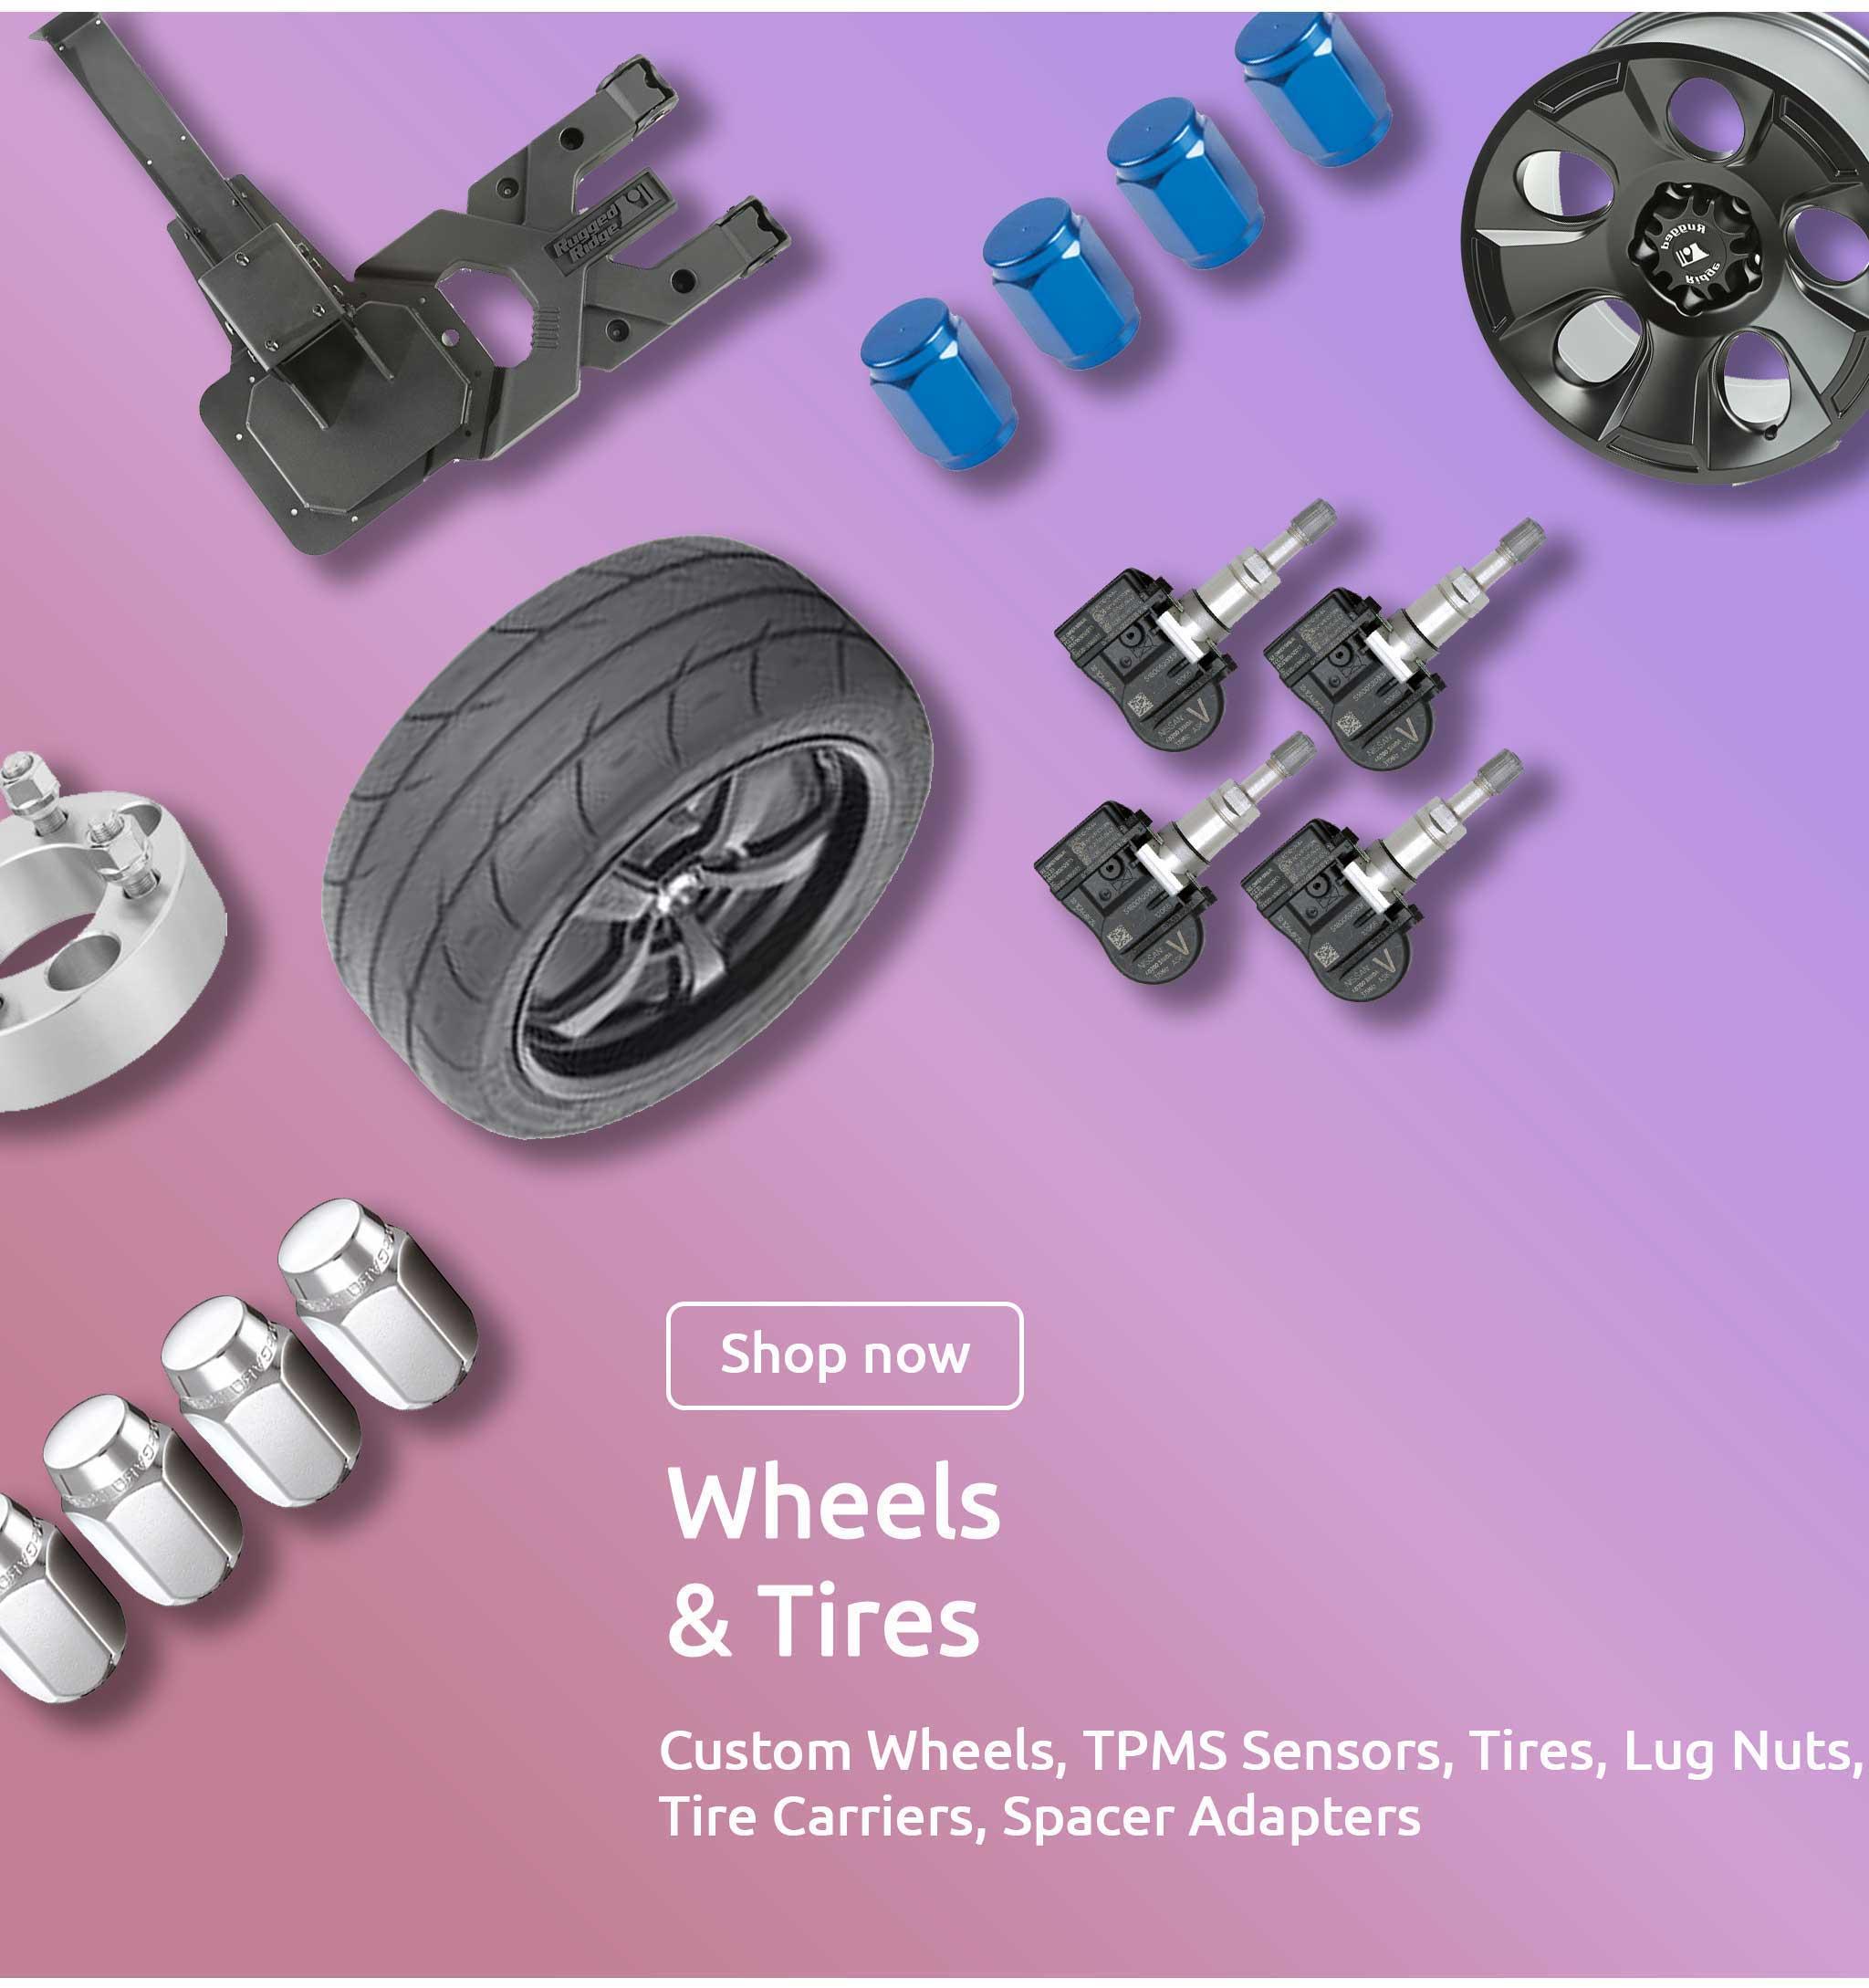 Custom Wheels, TPMS Sensors, Tires, Lug Nuts, Tire Carriers, Spacer Adapters